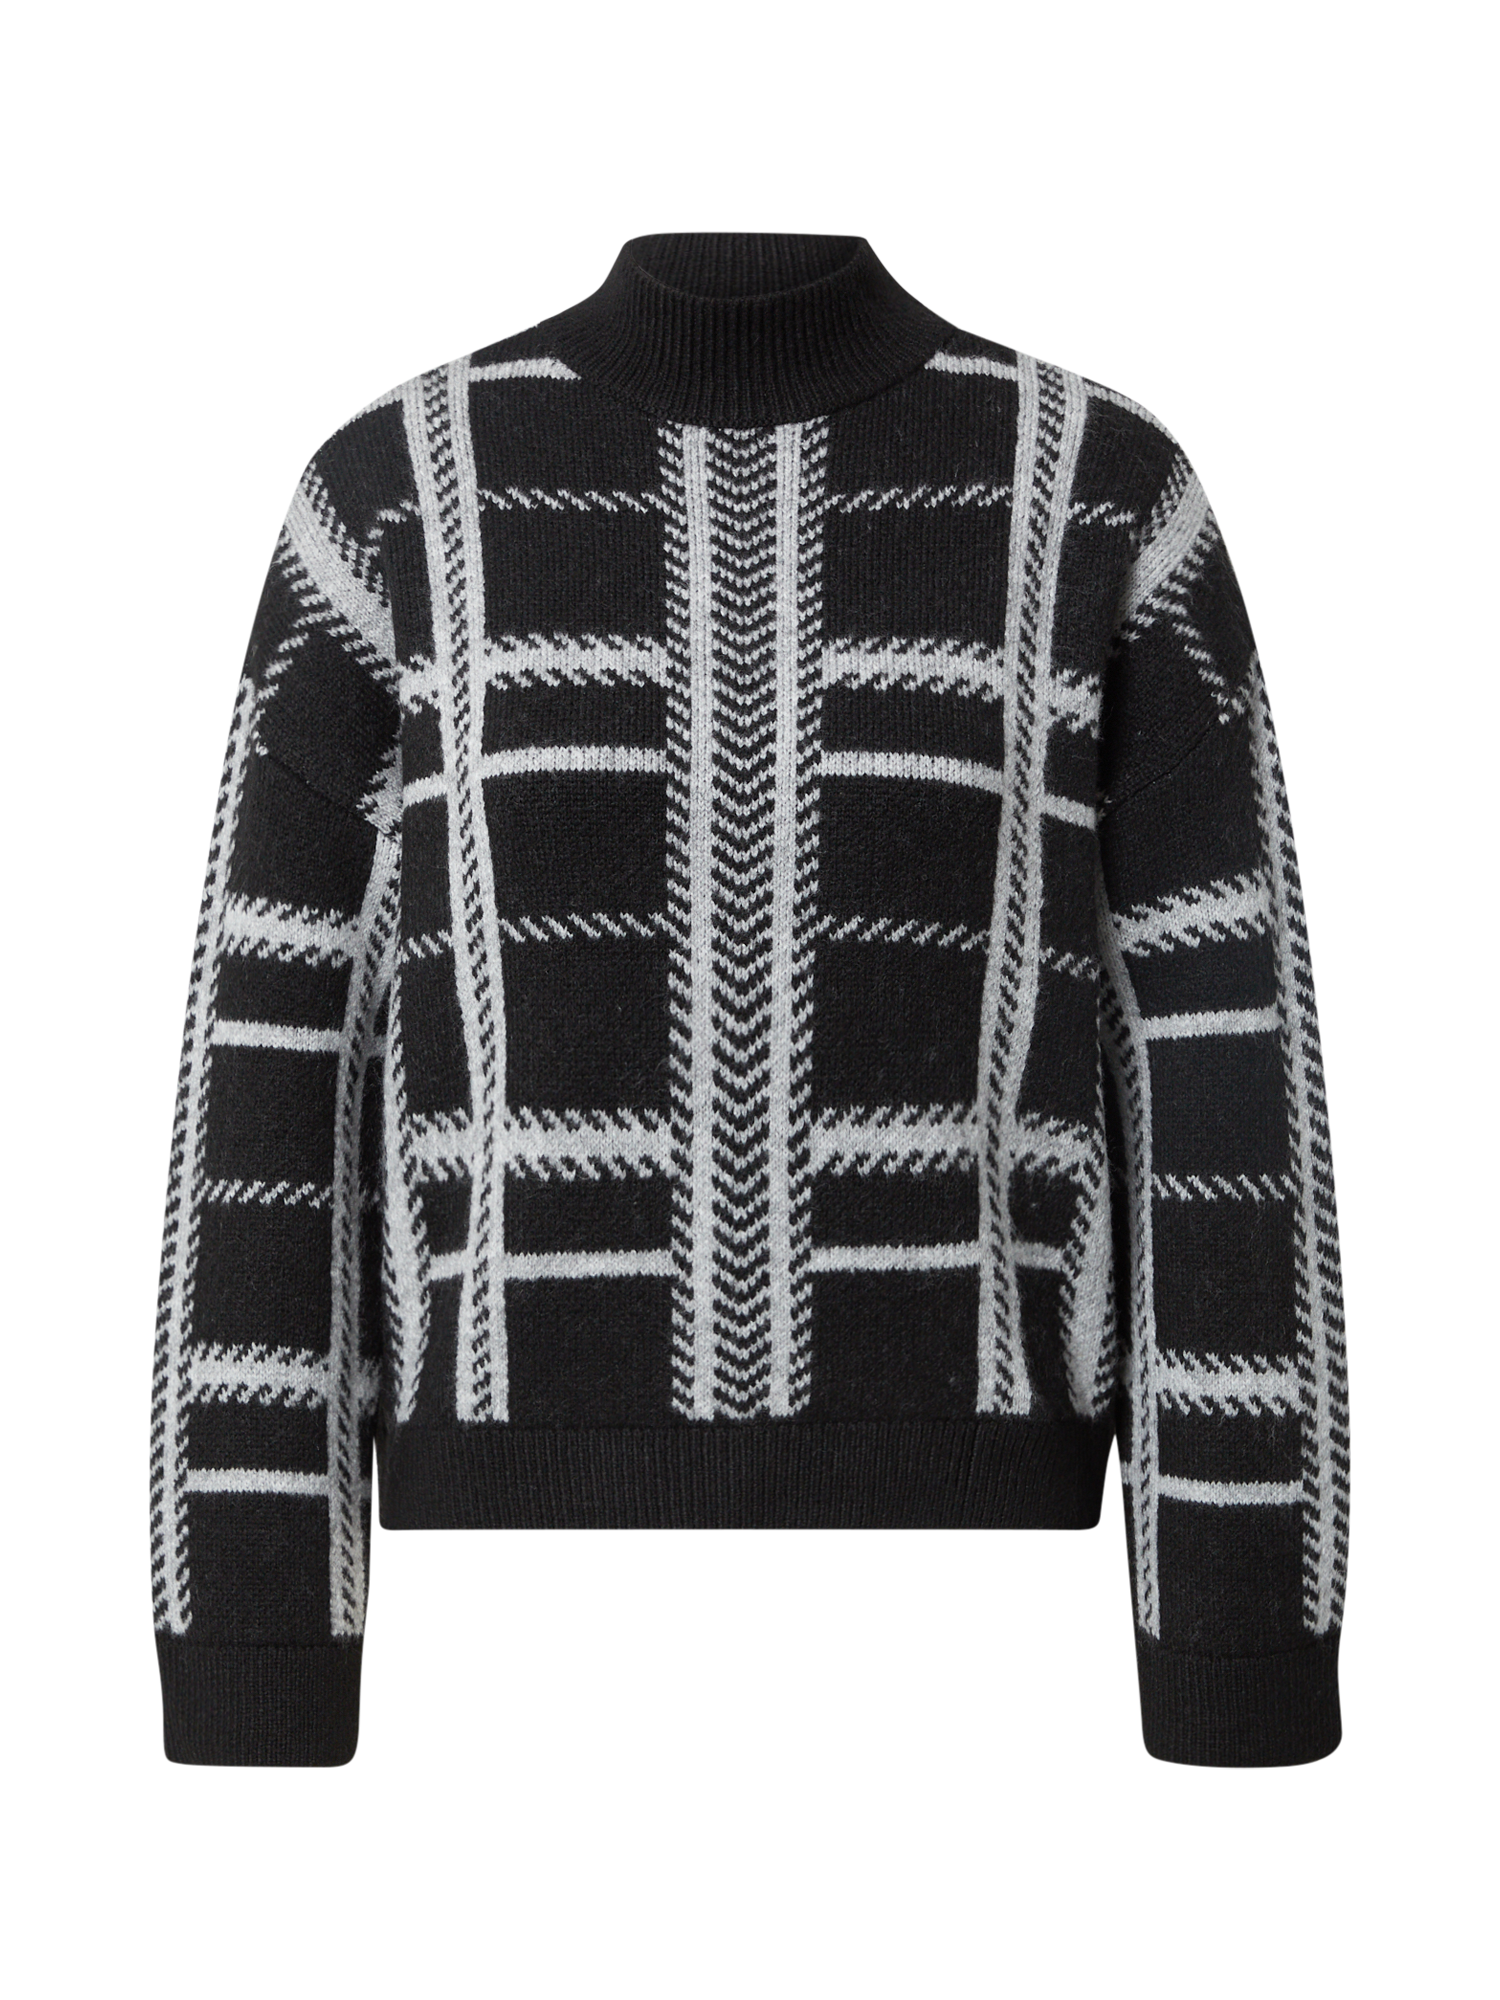 Odzież LTWLB ONLY Sweter BERNA w kolorze Czarnym 